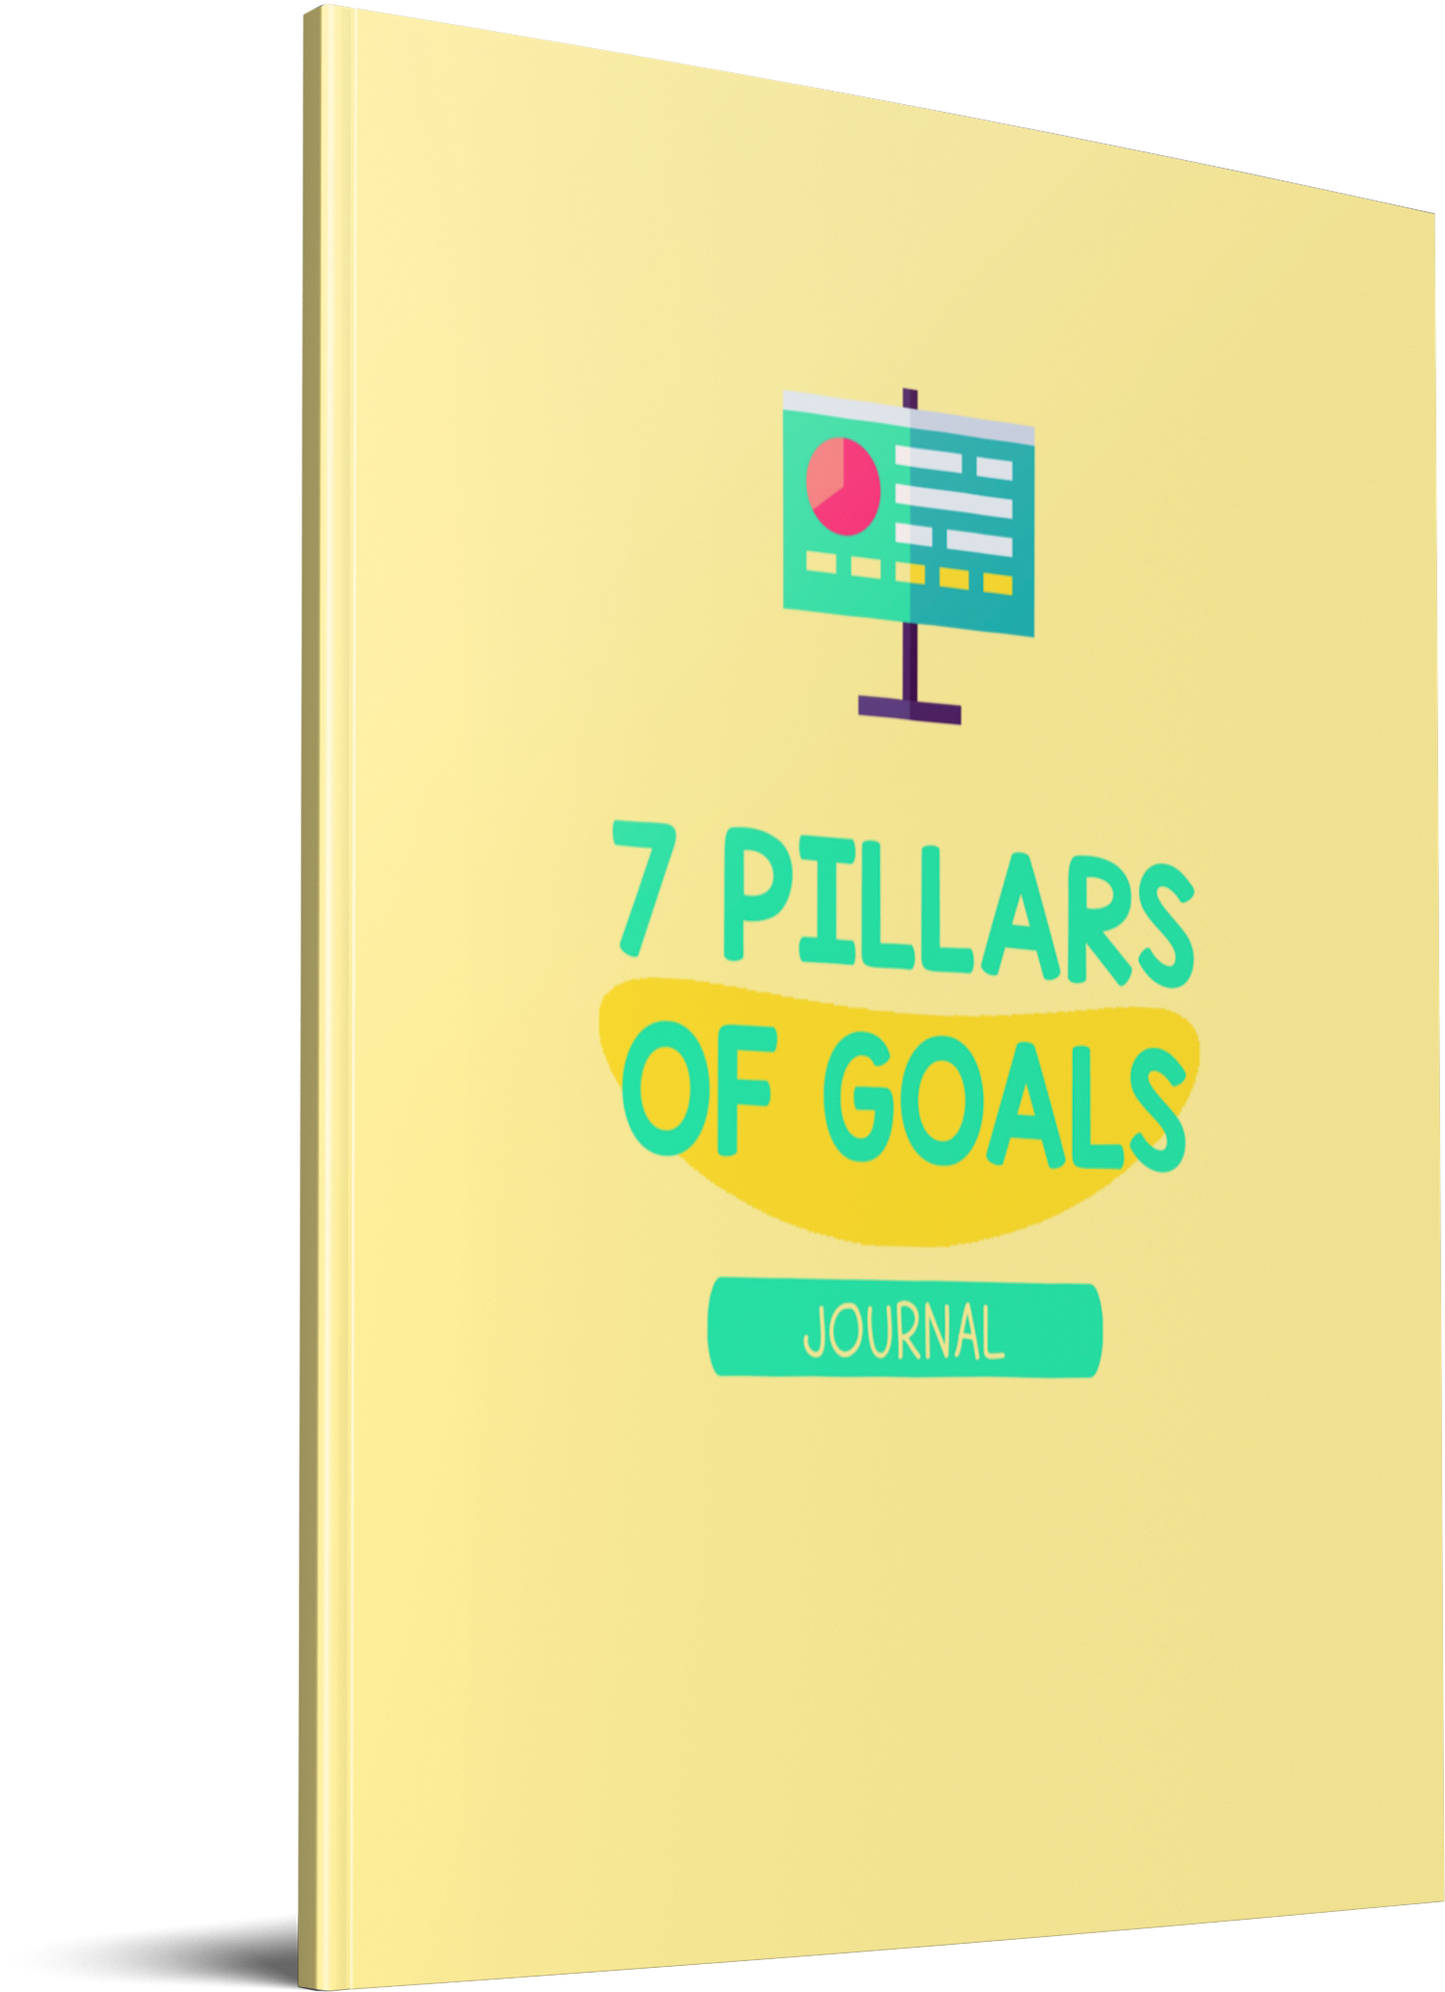 7 pillars of goals plr journal